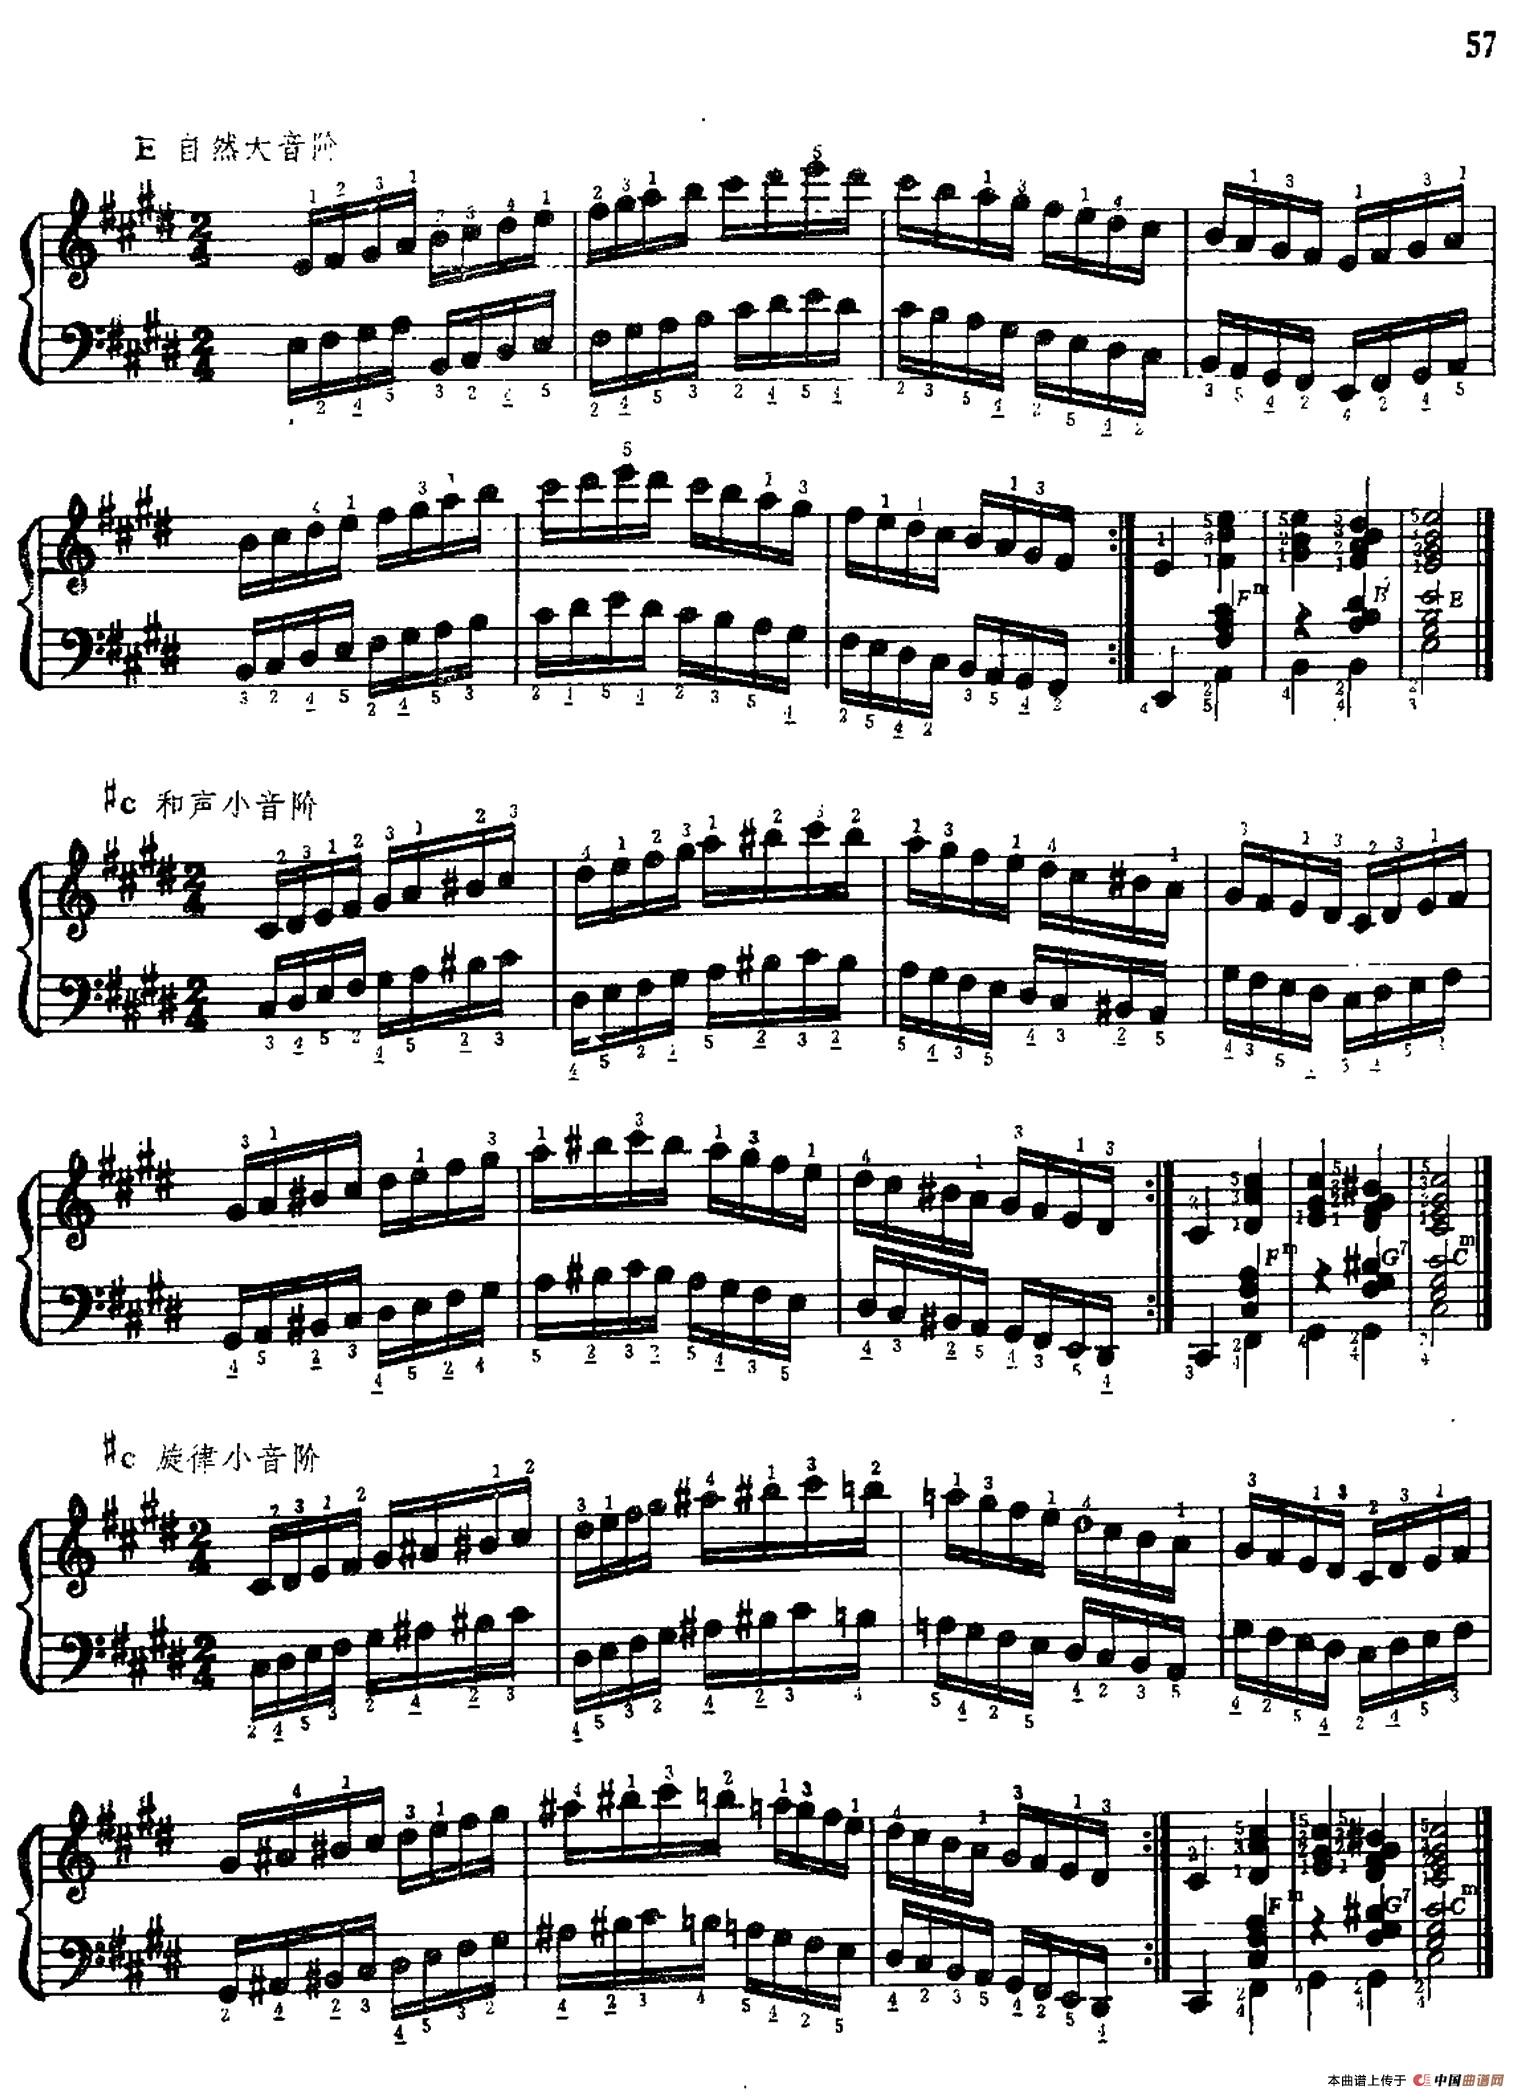 手风琴手指练习 第二部分（十二个大、小音阶的